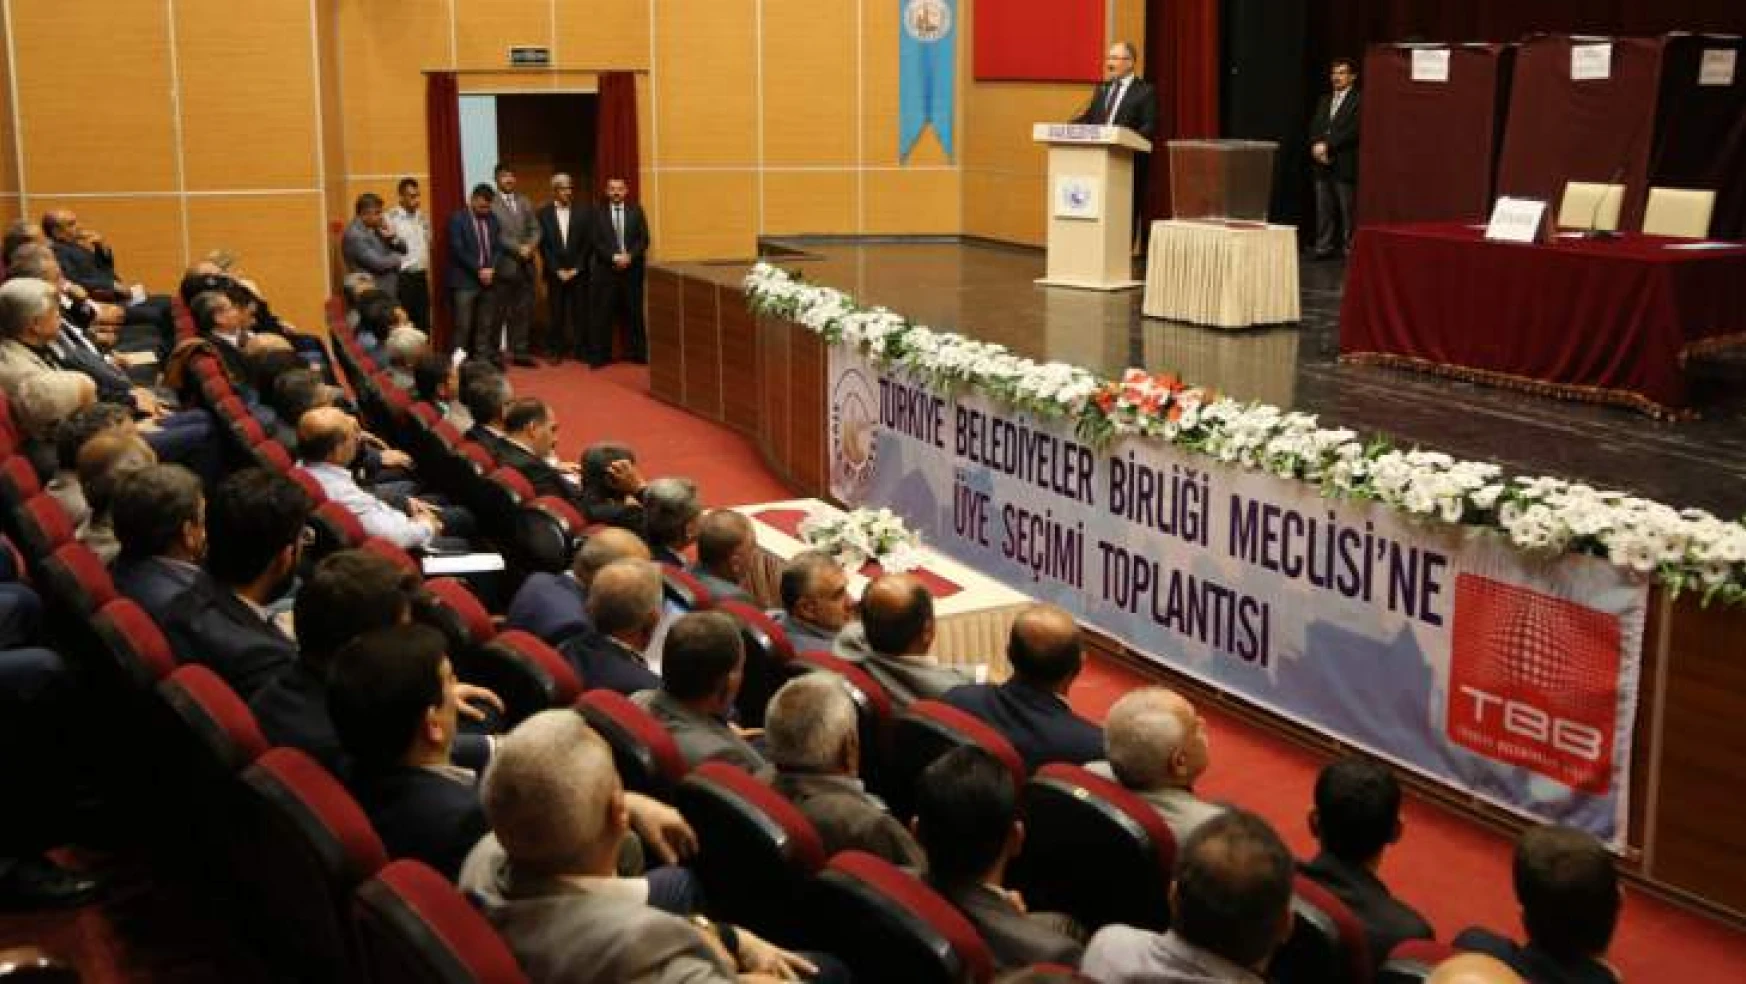 Türkiye Belediyeler Birliği Meclis Üyeleri Seçildi